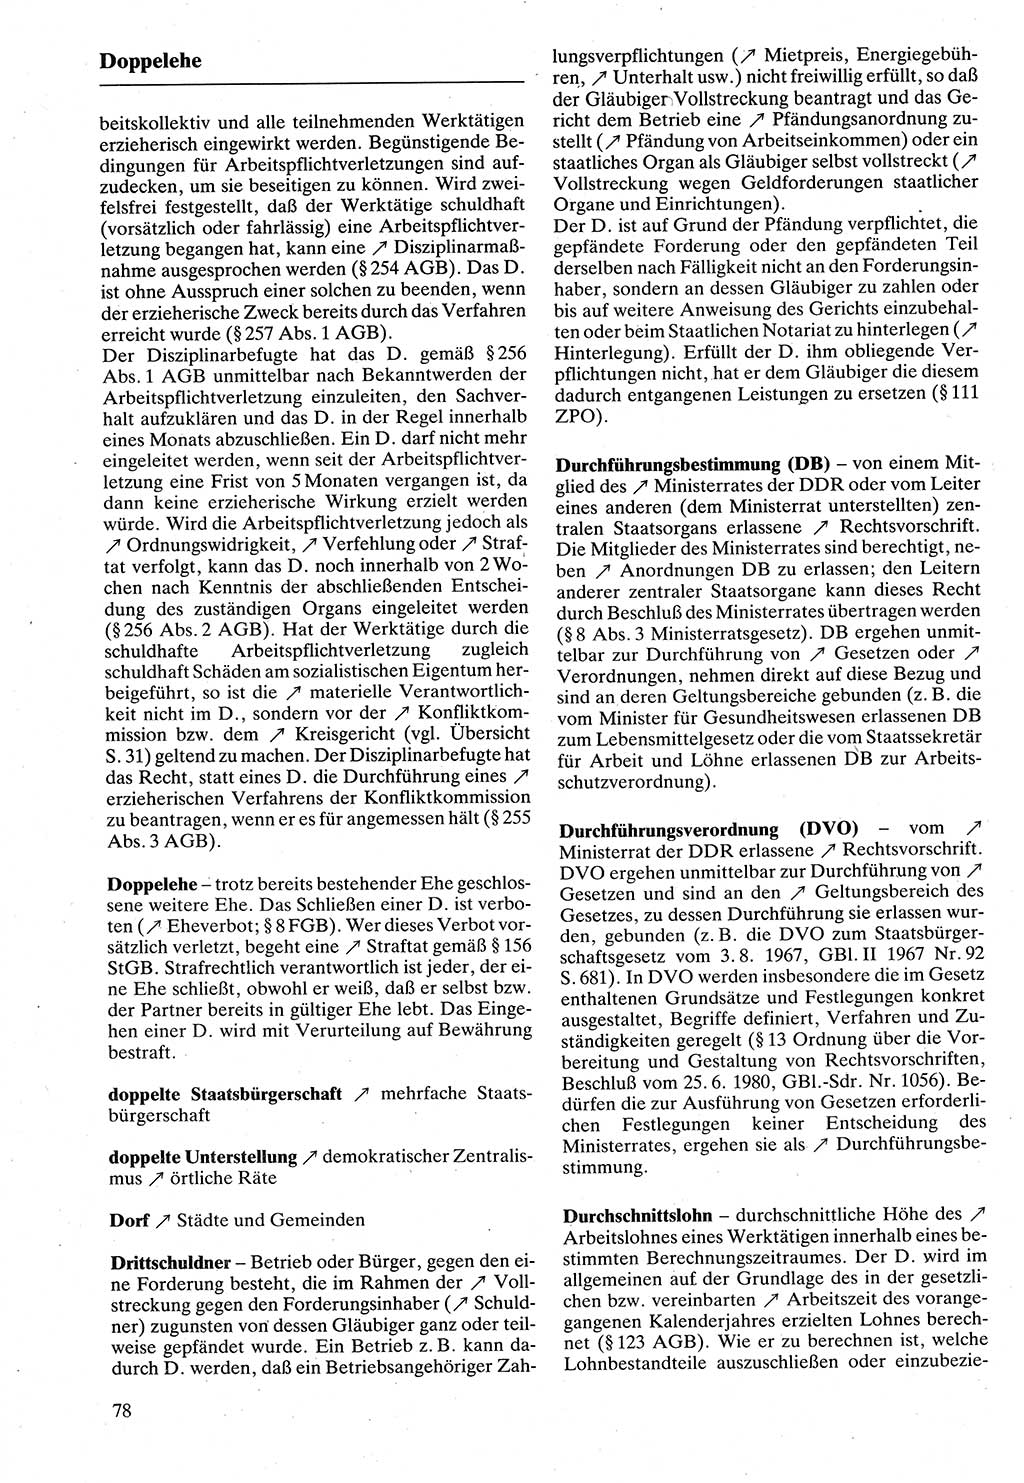 Rechtslexikon [Deutsche Demokratische Republik (DDR)] 1988, Seite 78 (Rechtslex. DDR 1988, S. 78)